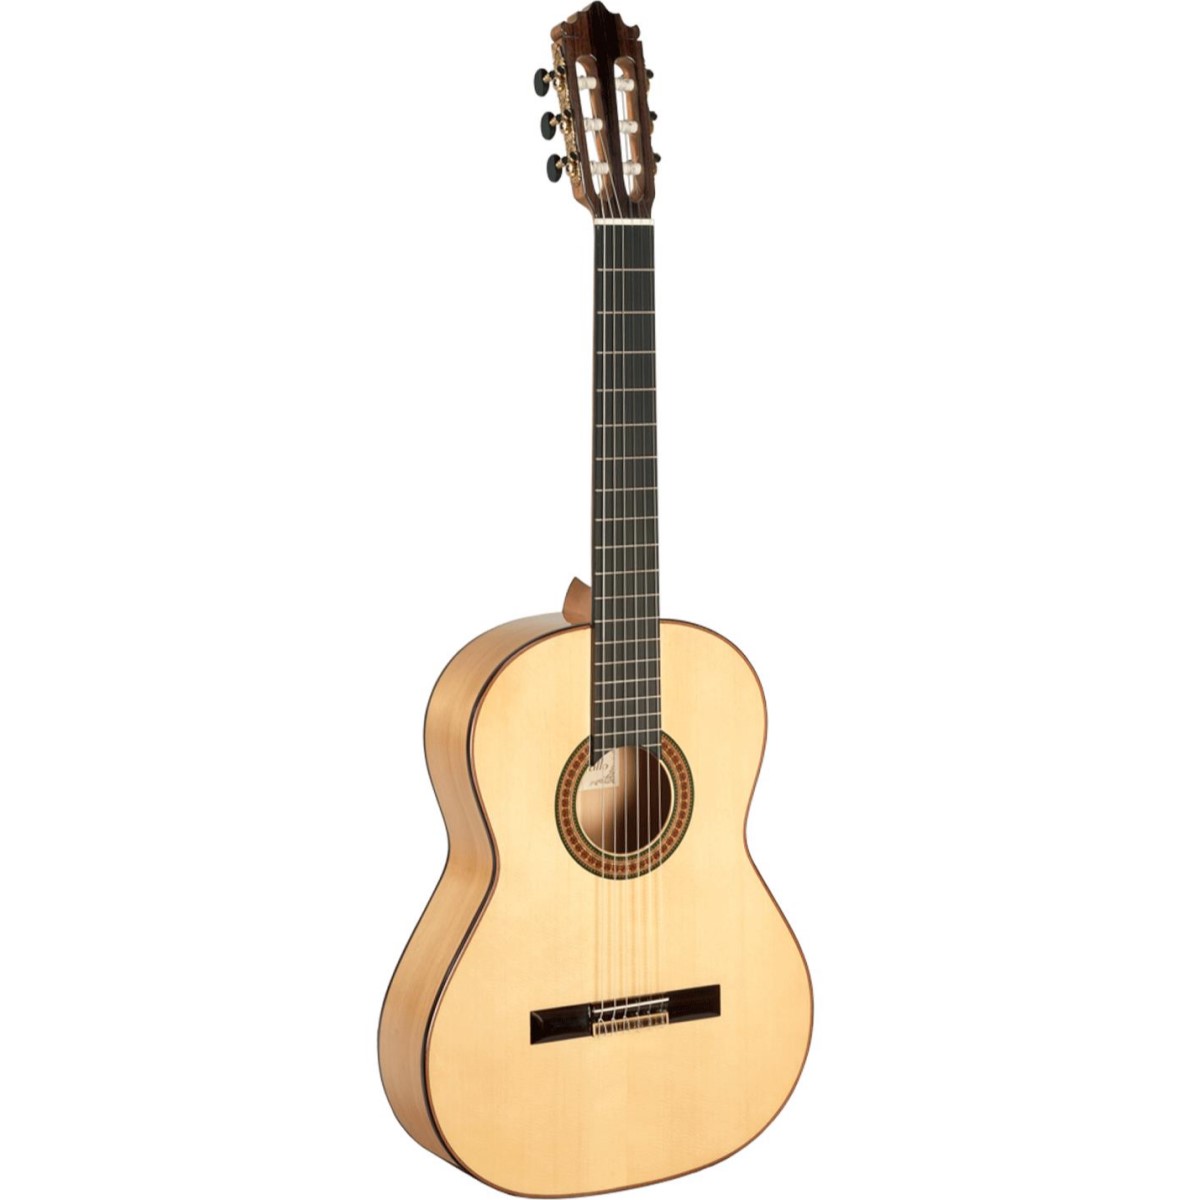 Comprar Guitarra Flamenca Paco Castillo al mejor precio en Prieto